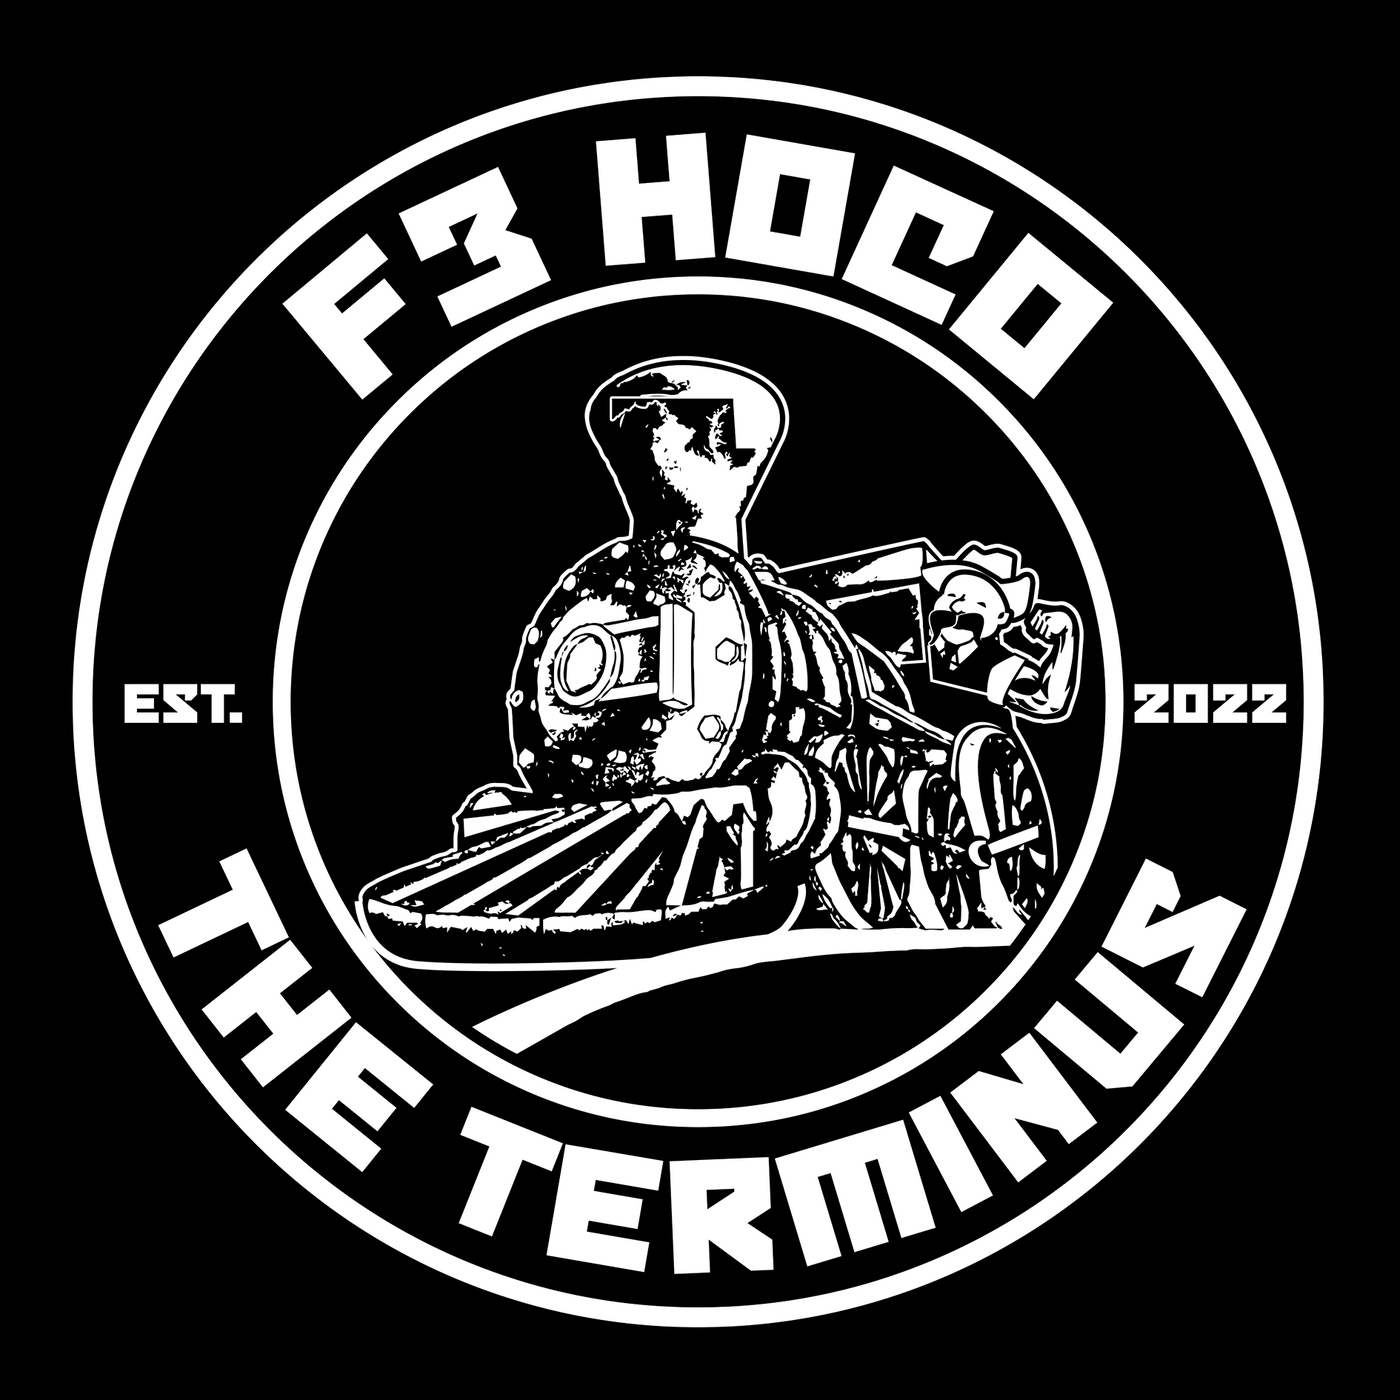 F3 Hoco The Terminus Pre-Order October 2022